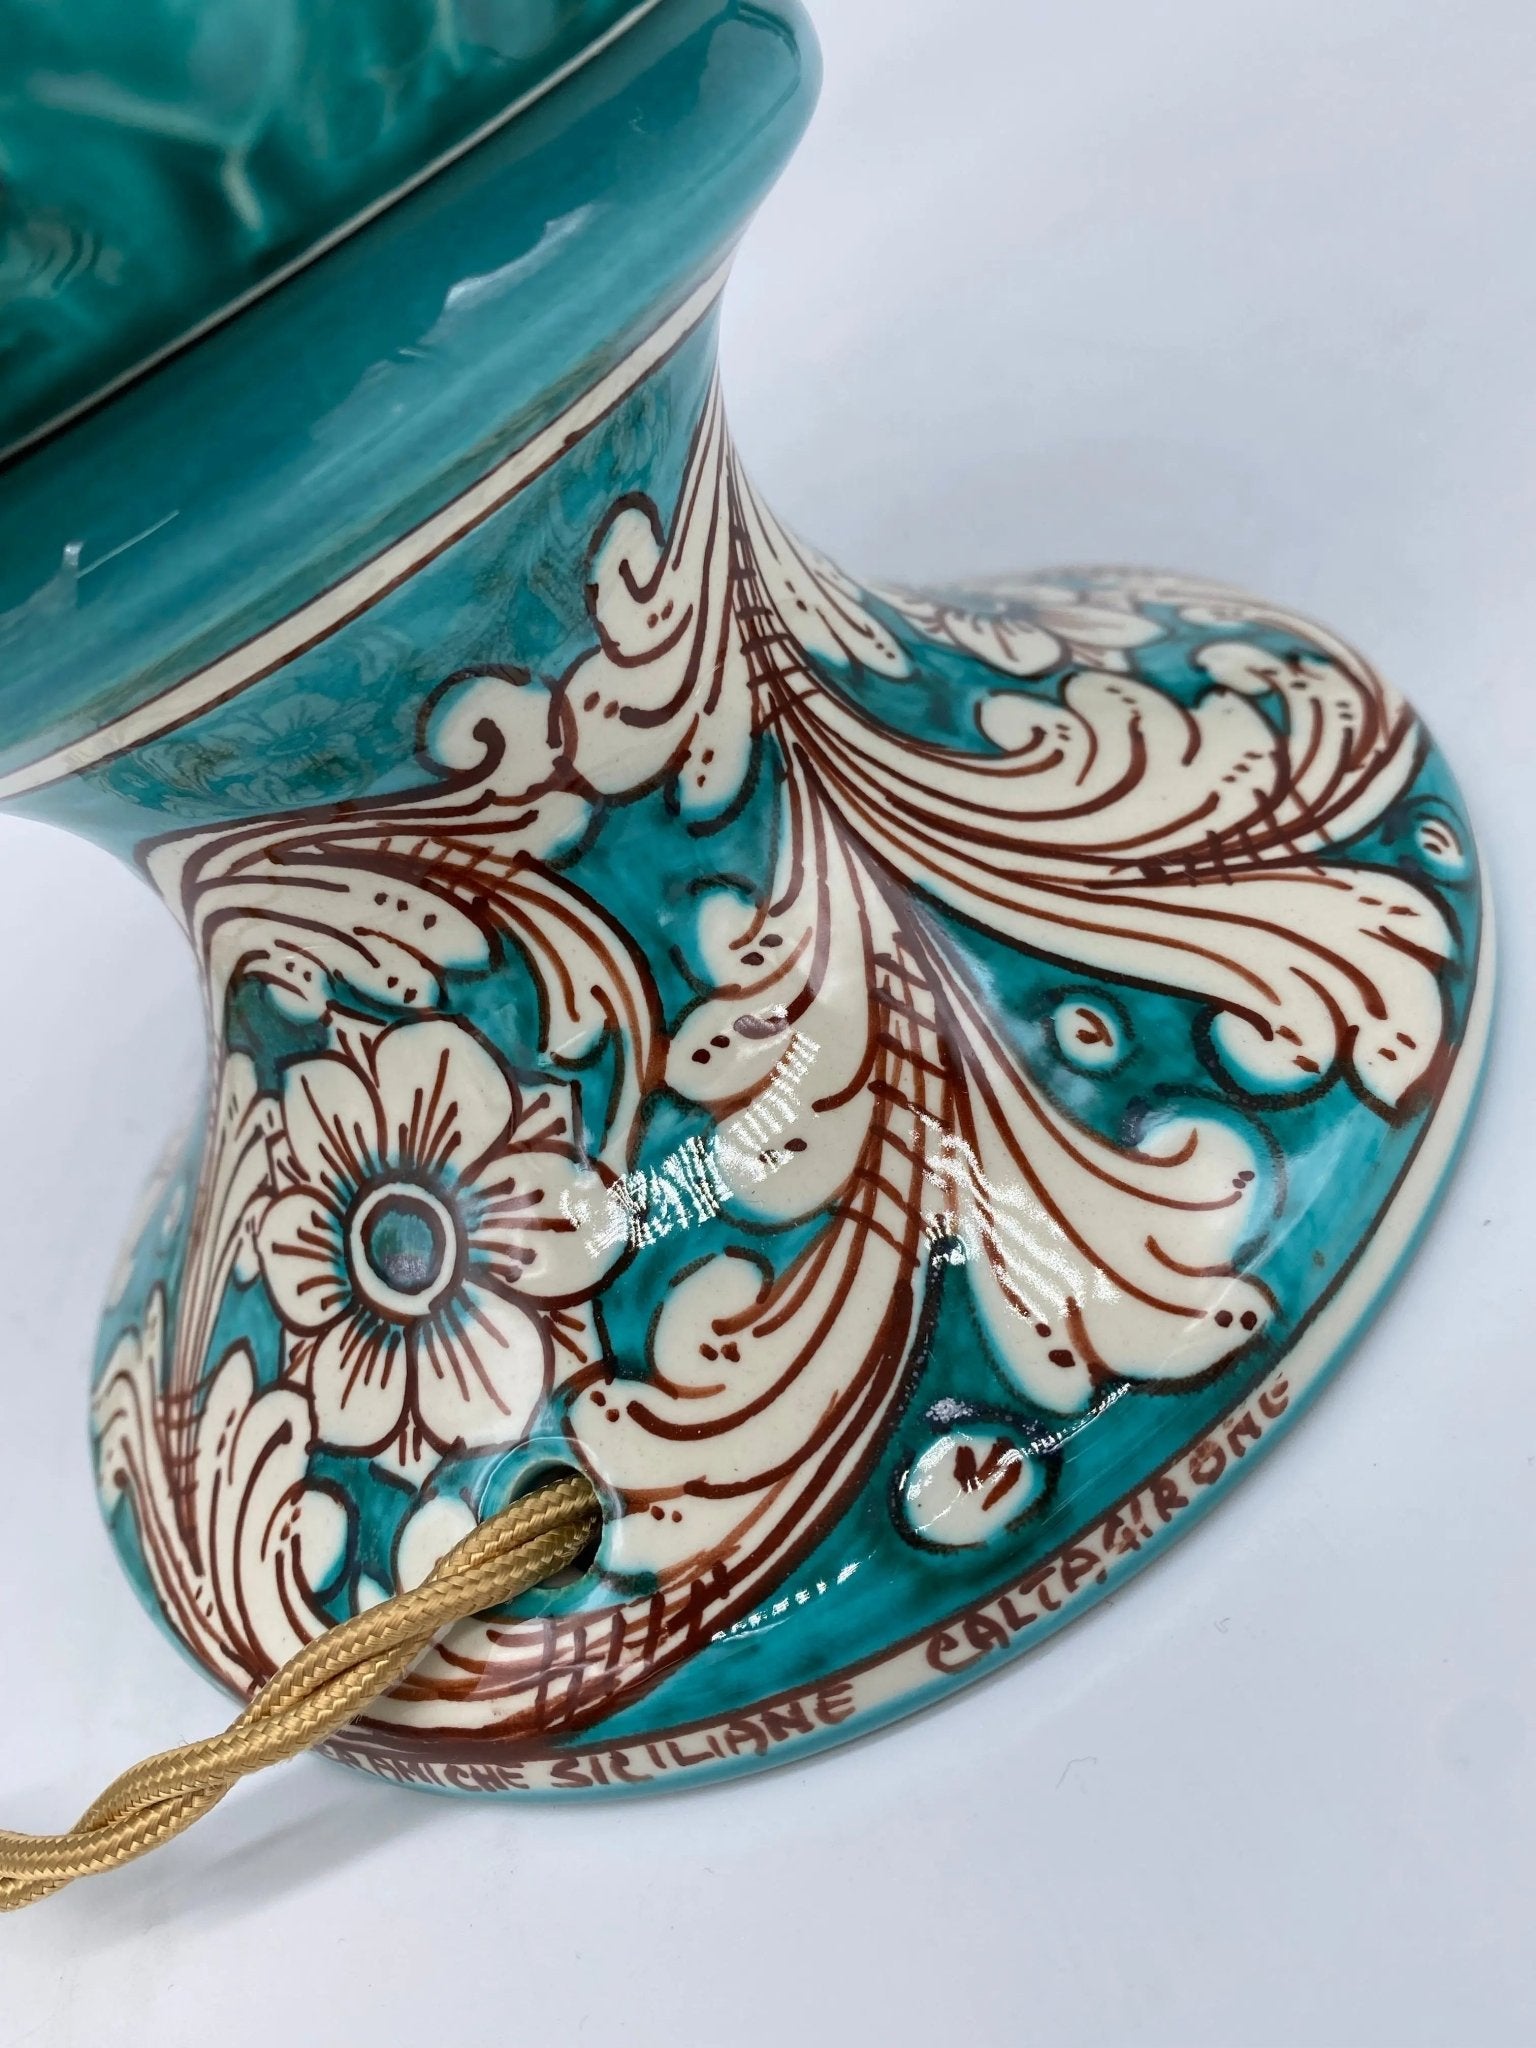 Pigna artigianale in ceramica Siciliana di Caltagirone varie misure